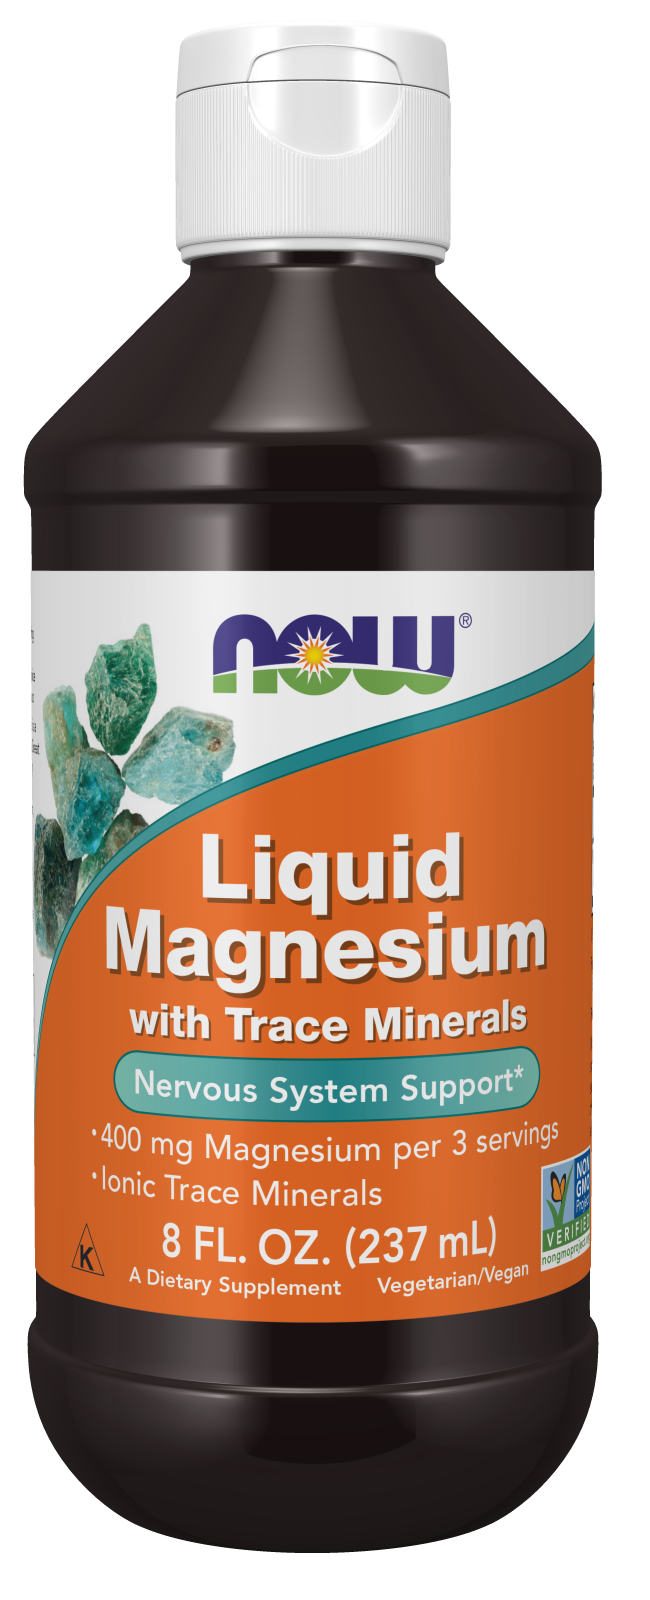 Liquid Magnesium - 8 fl. oz. Bottle Front